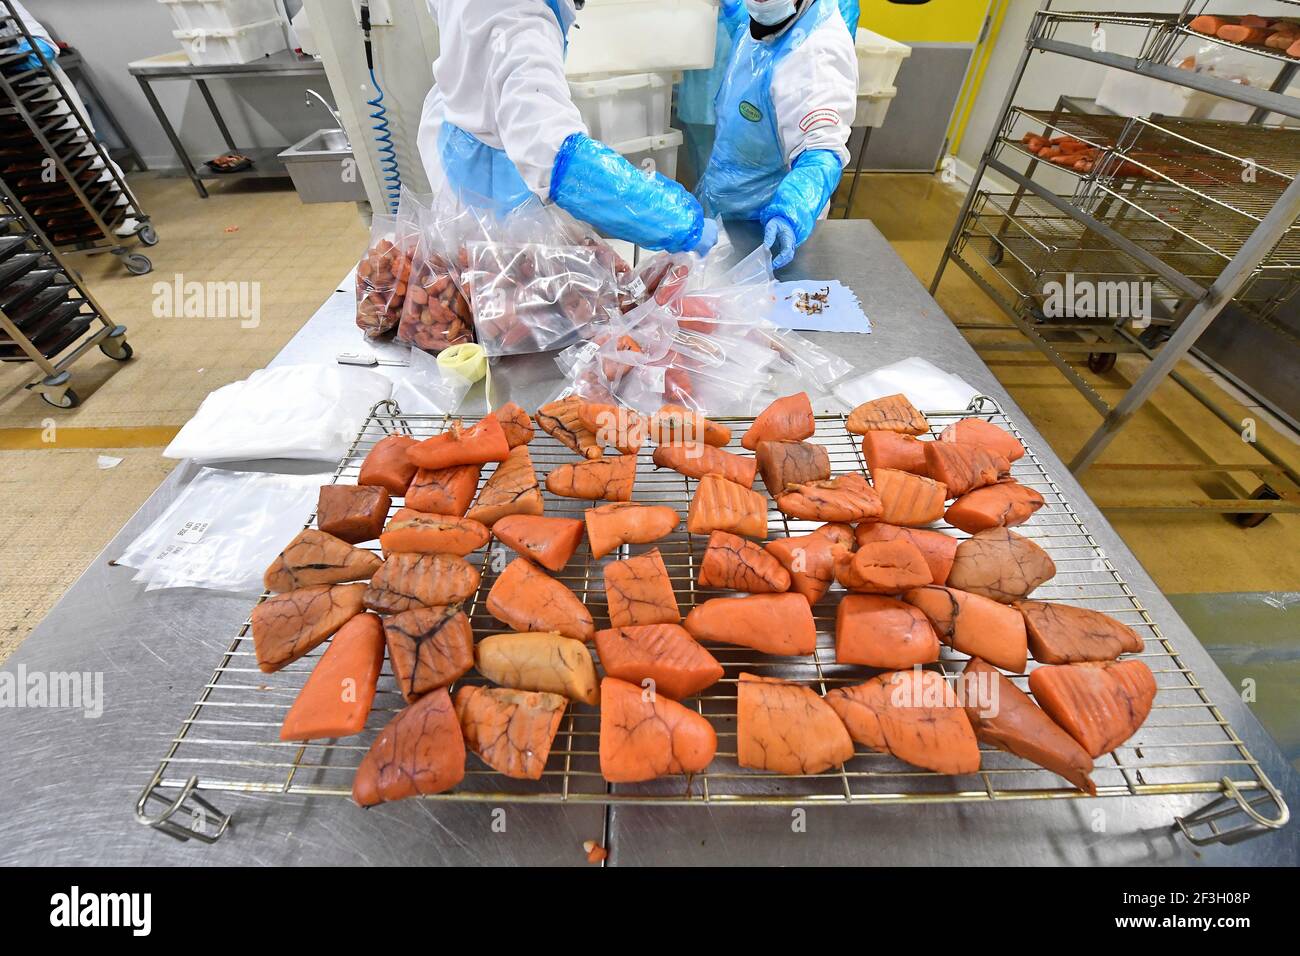 Boulogne-sur-Mer (Nordfrankreich): Geräucherte Lumpenfische in der Werkstatt der Salzfirma JC David. Mitarbeiter tragen Schutzausrüstung, glov Stockfoto